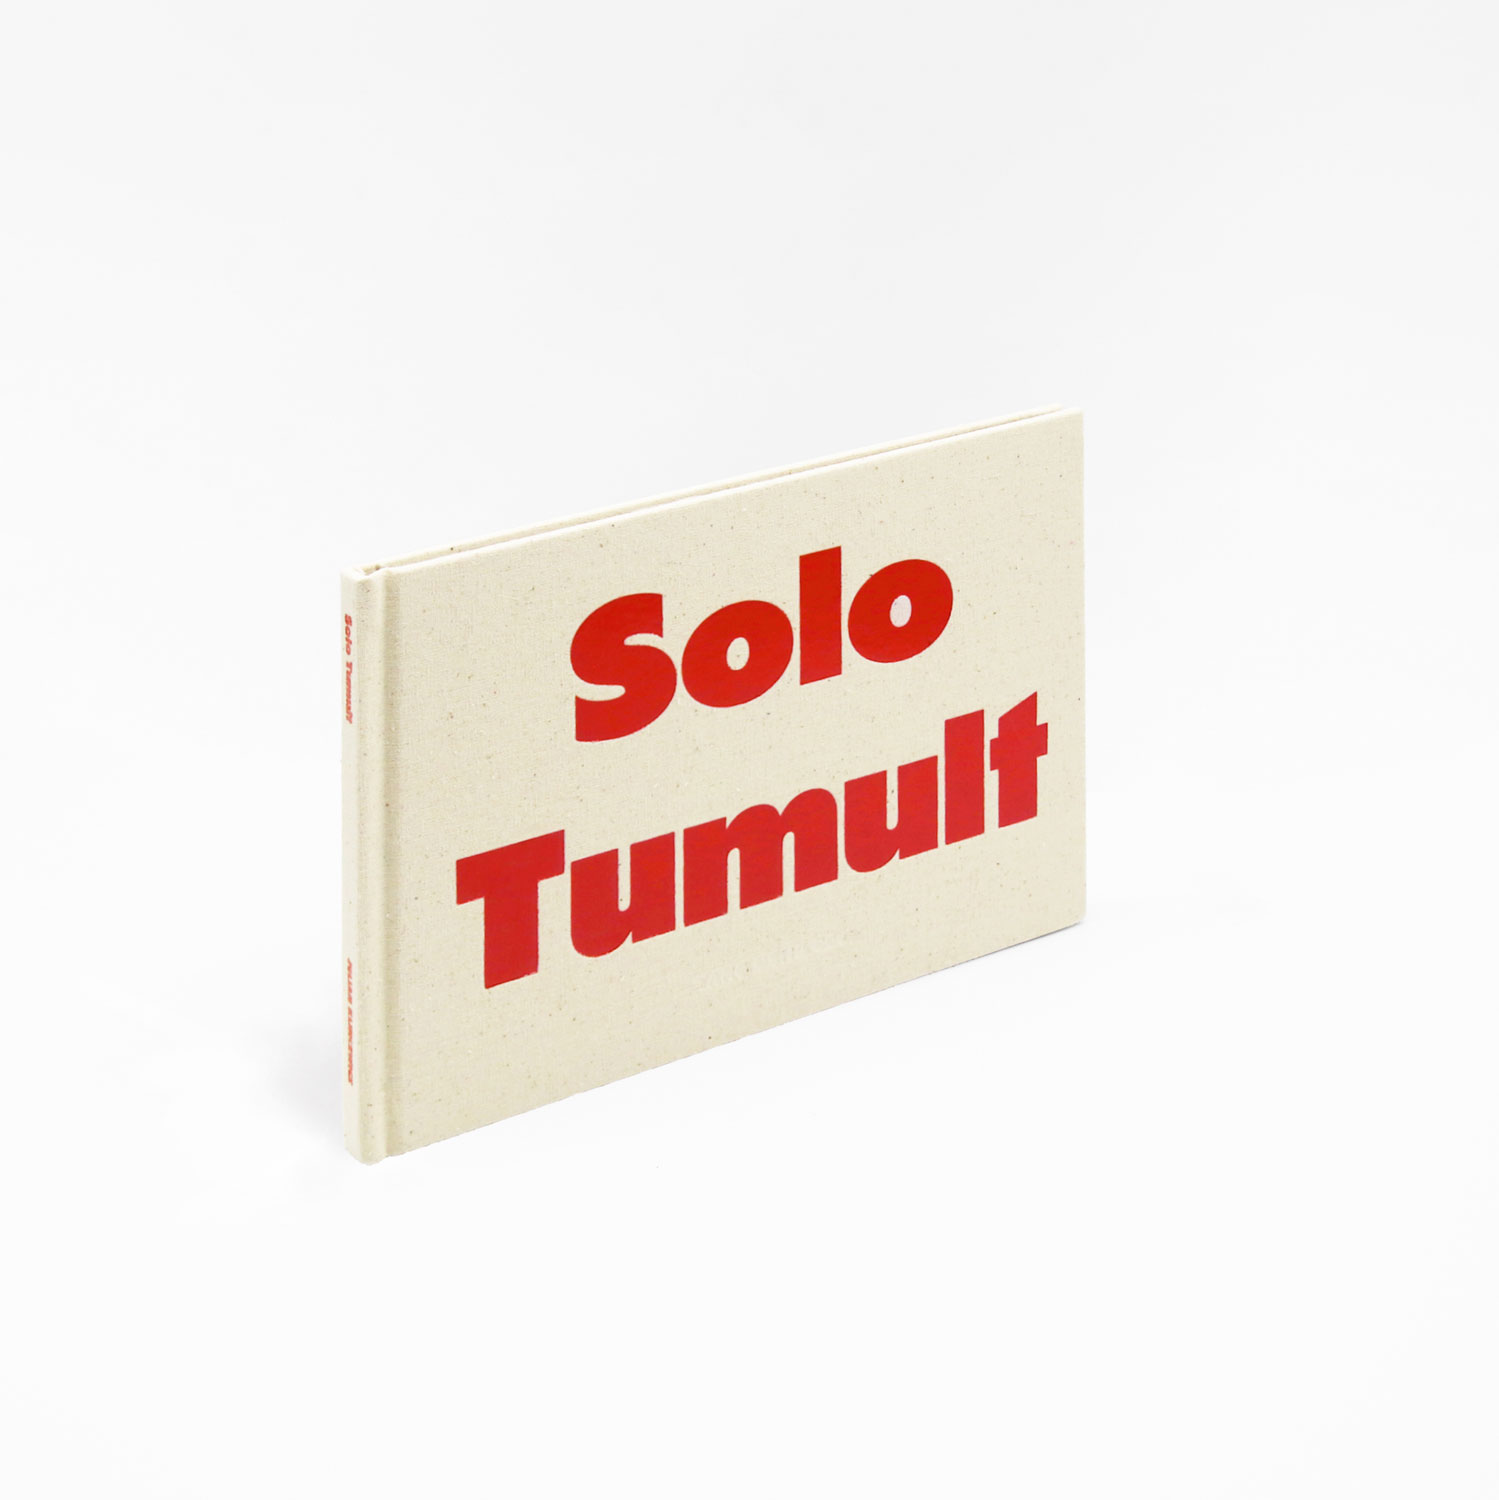 ジュリアン・クリンスウィックス『Solo Tumult』